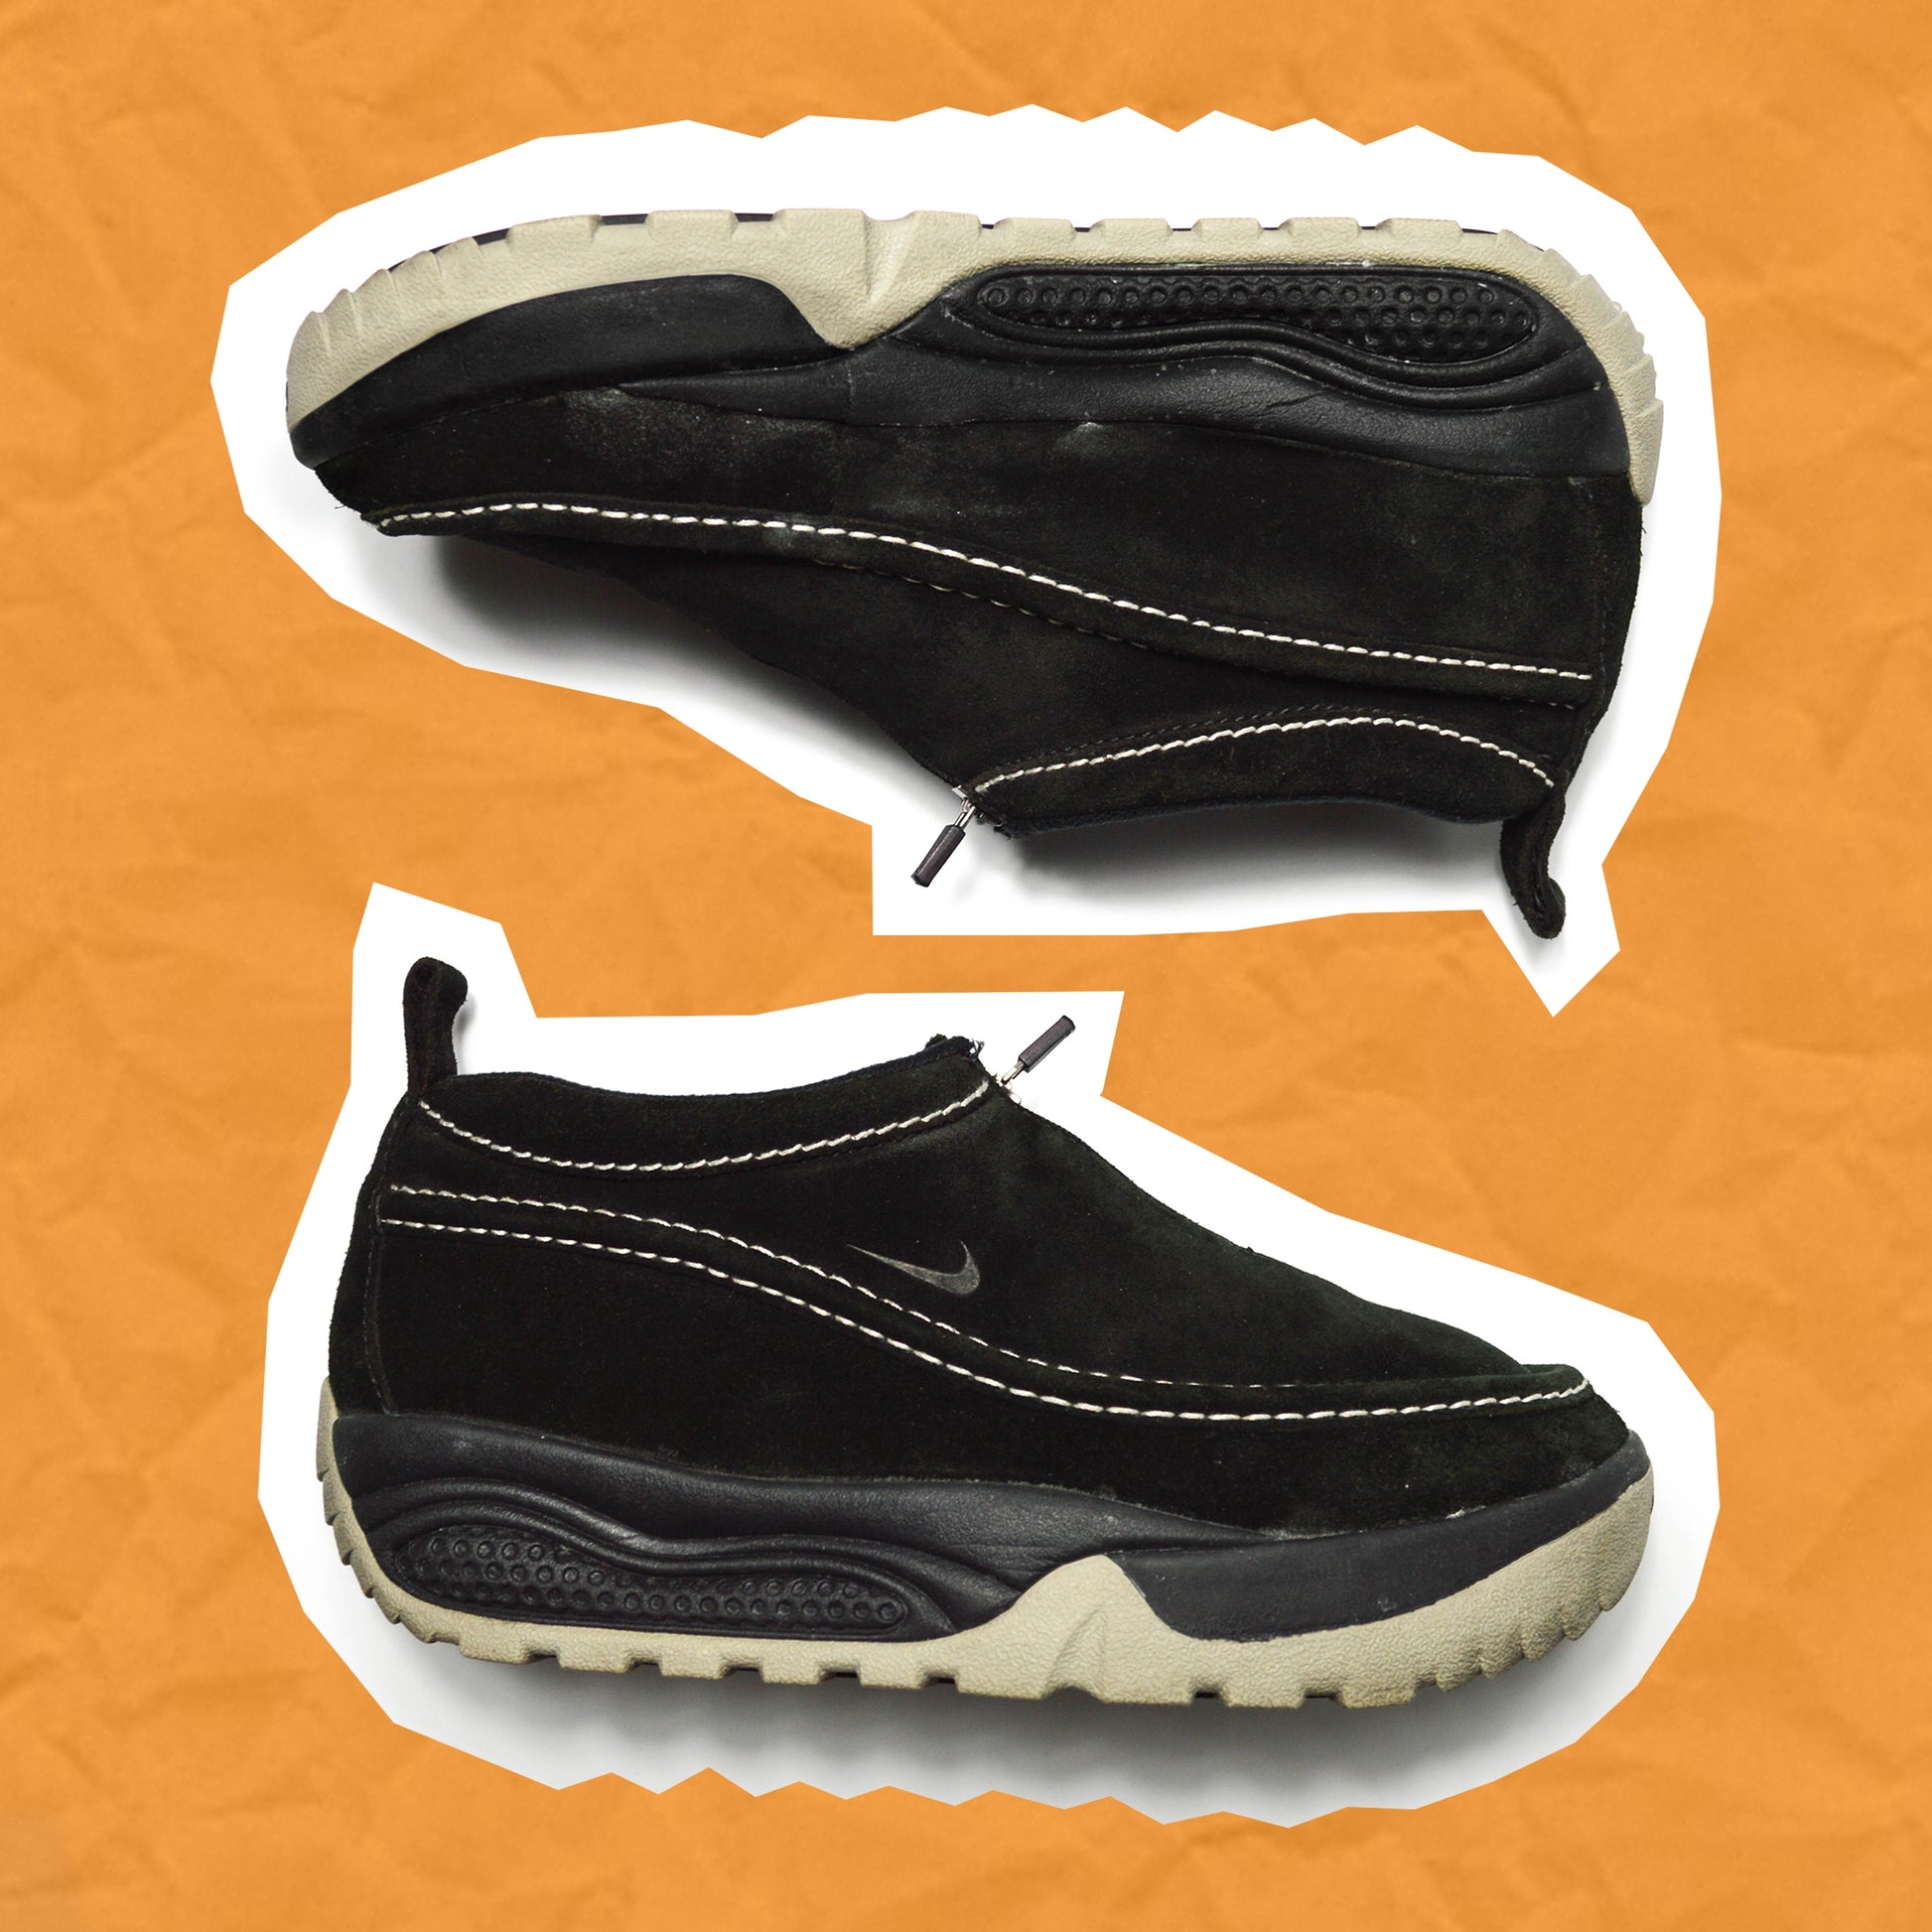 Nike ACG 1999 Izy Front Zip Black Sneakers (UK 10)